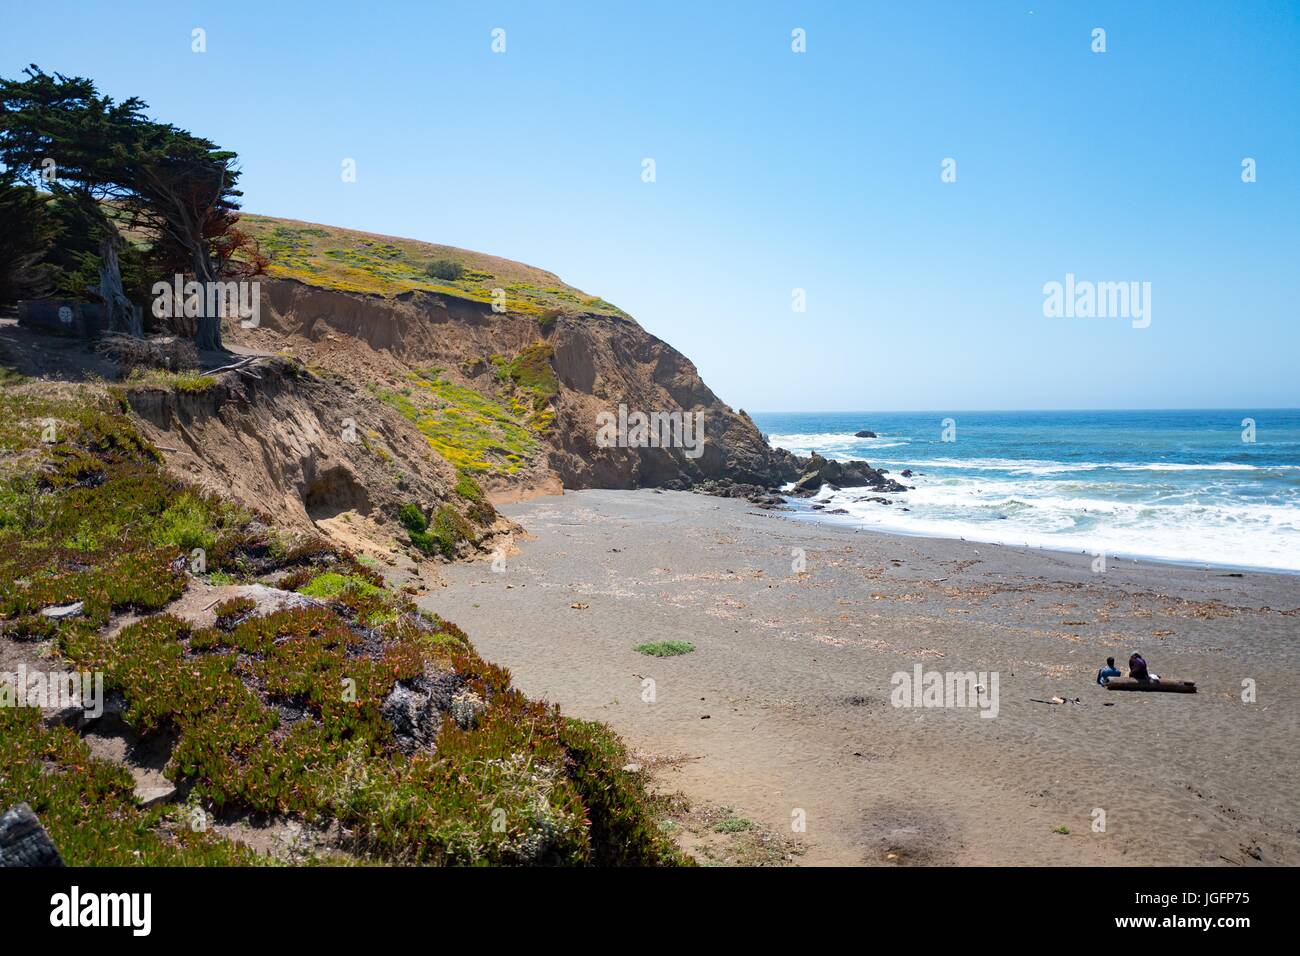 Zwei Menschen sitzen auf einem Baumstamm an einem einsamen Strand mit Wellen, die an der Küste, Mori Point, Teil der Golden Gate National Recreation Area in Pacifica, Kalifornien, 20. Juni 2017. Stockfoto